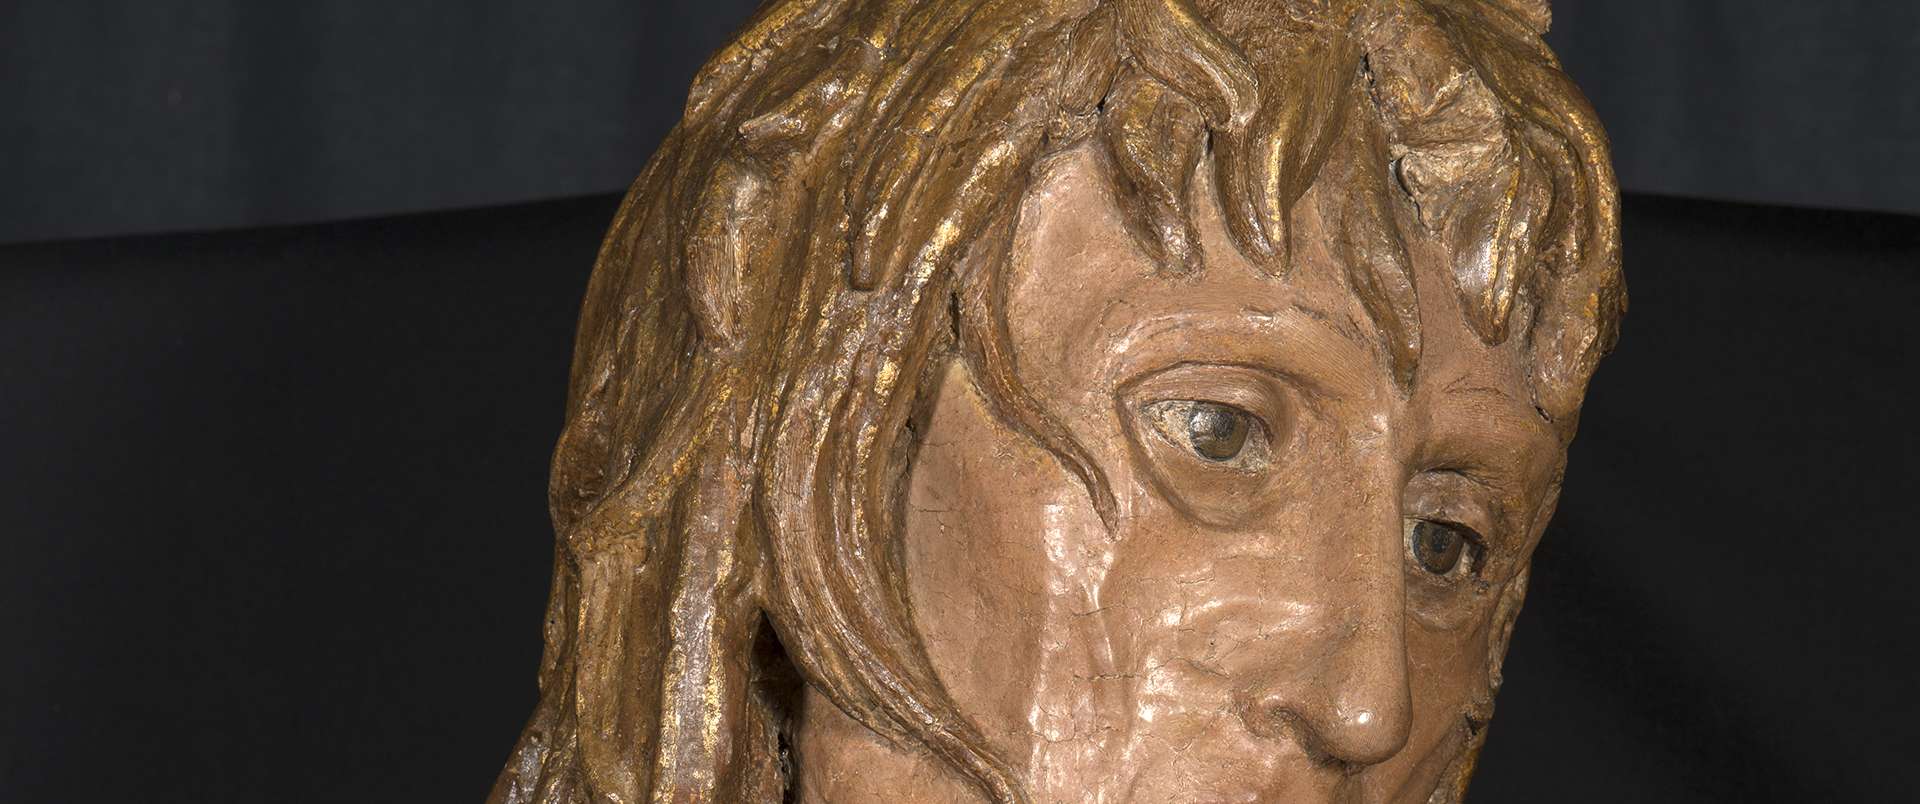 Donatello, Maddalena penitente, 1440 ca., Museo dell’Opera del Duomo, Firenze